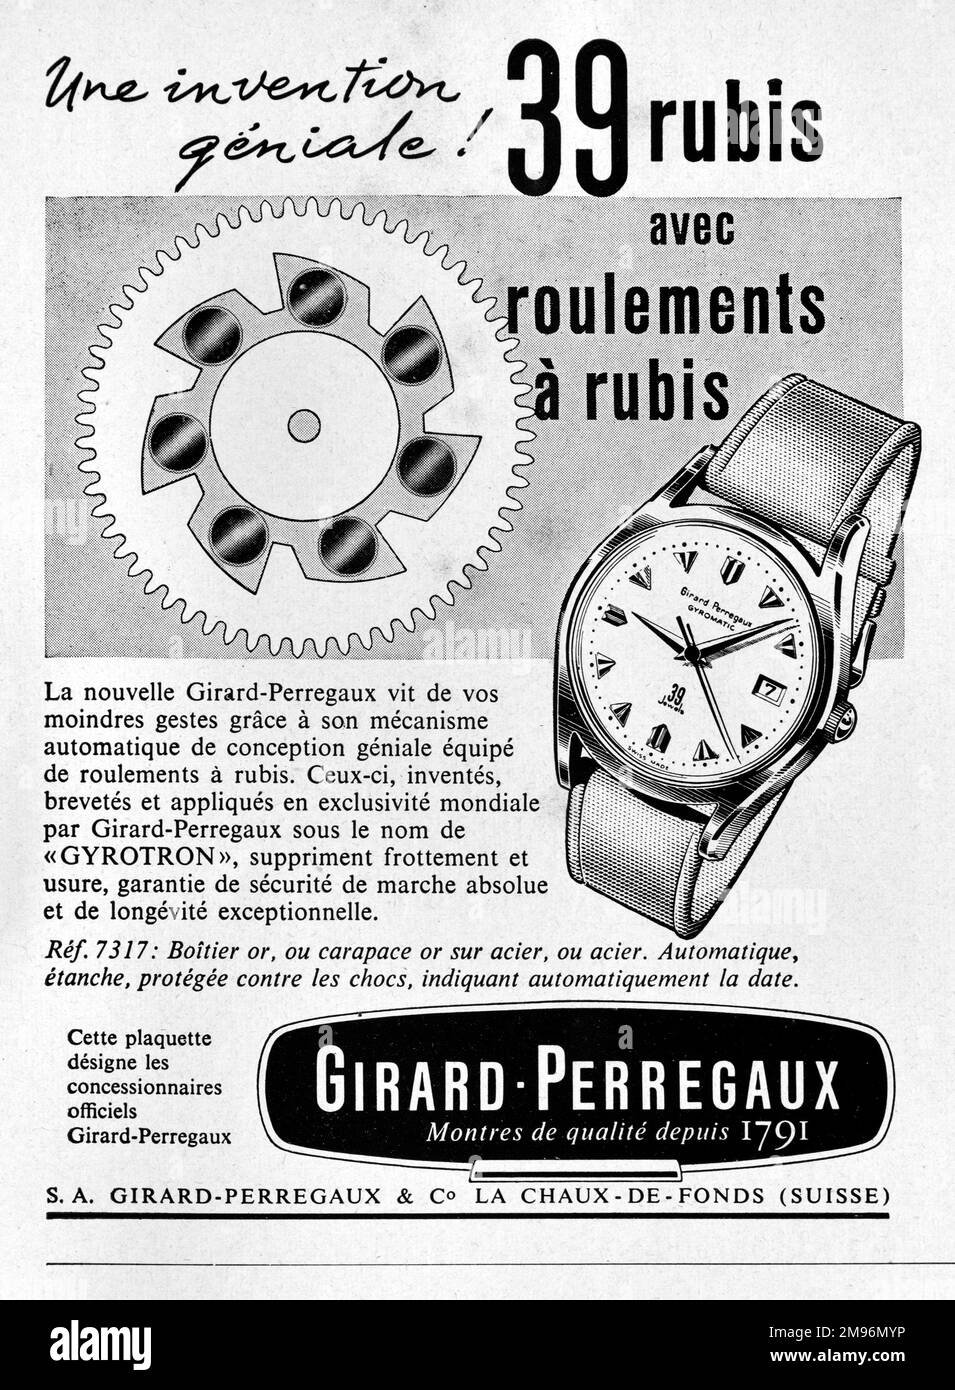 Vintage o antiguo anuncio, publicidad, publicidad o ilustración para Girard-Perregaux relojes. Ver anuncio 1957 Foto de stock